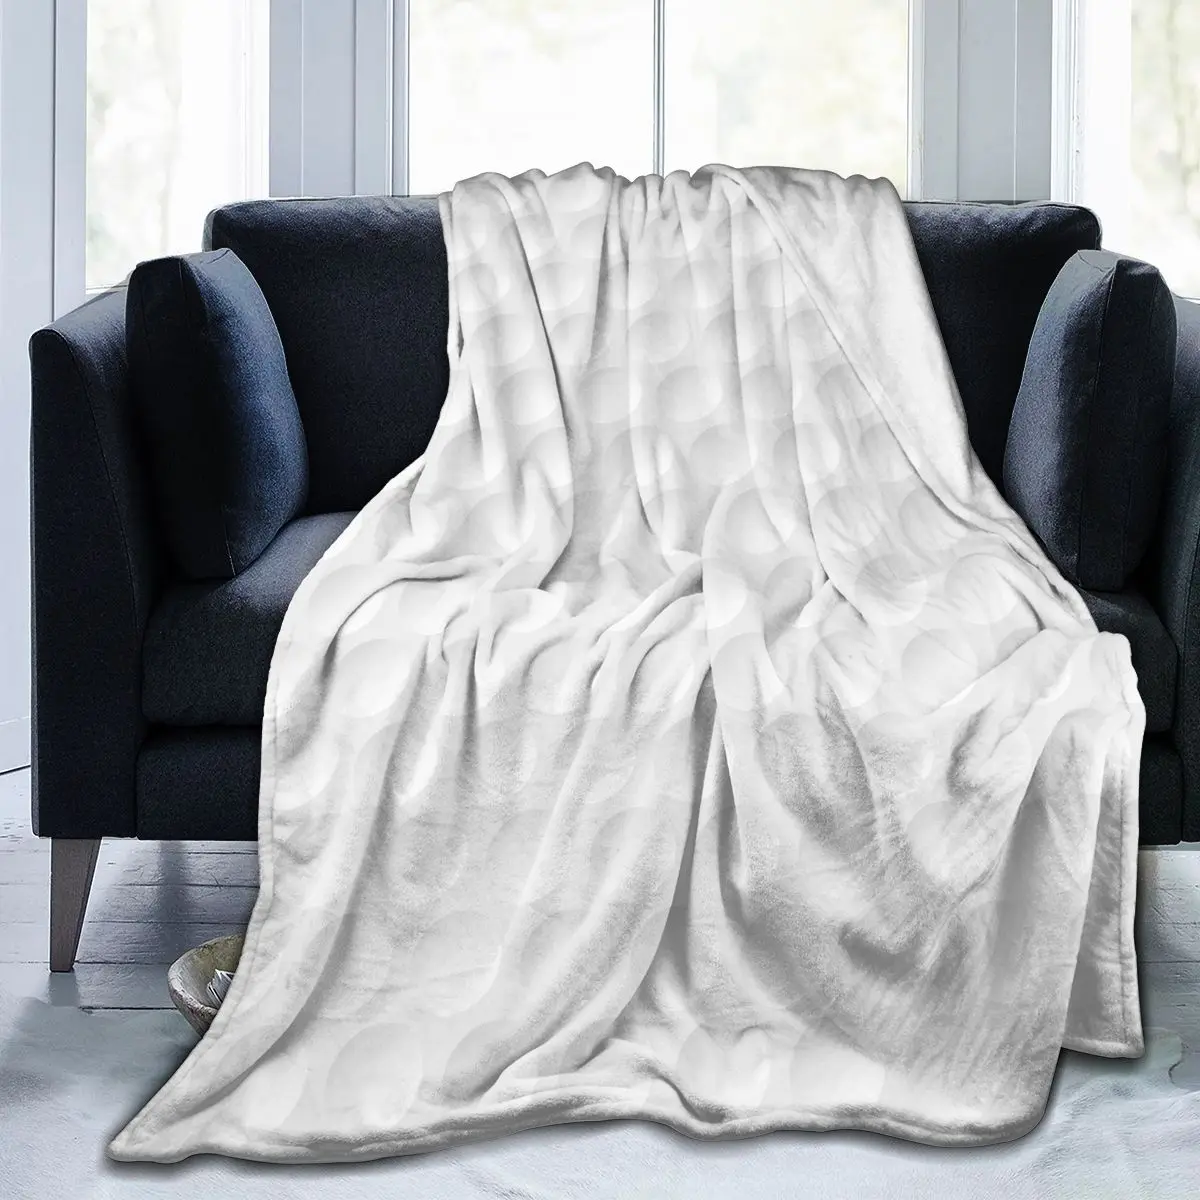 

Мягкое теплое Флисовое одеяло с принтом мячей для гольфа зимнее диванное одеяло 3 размера светильник кое тонкое фланелевое одеяло для механ...